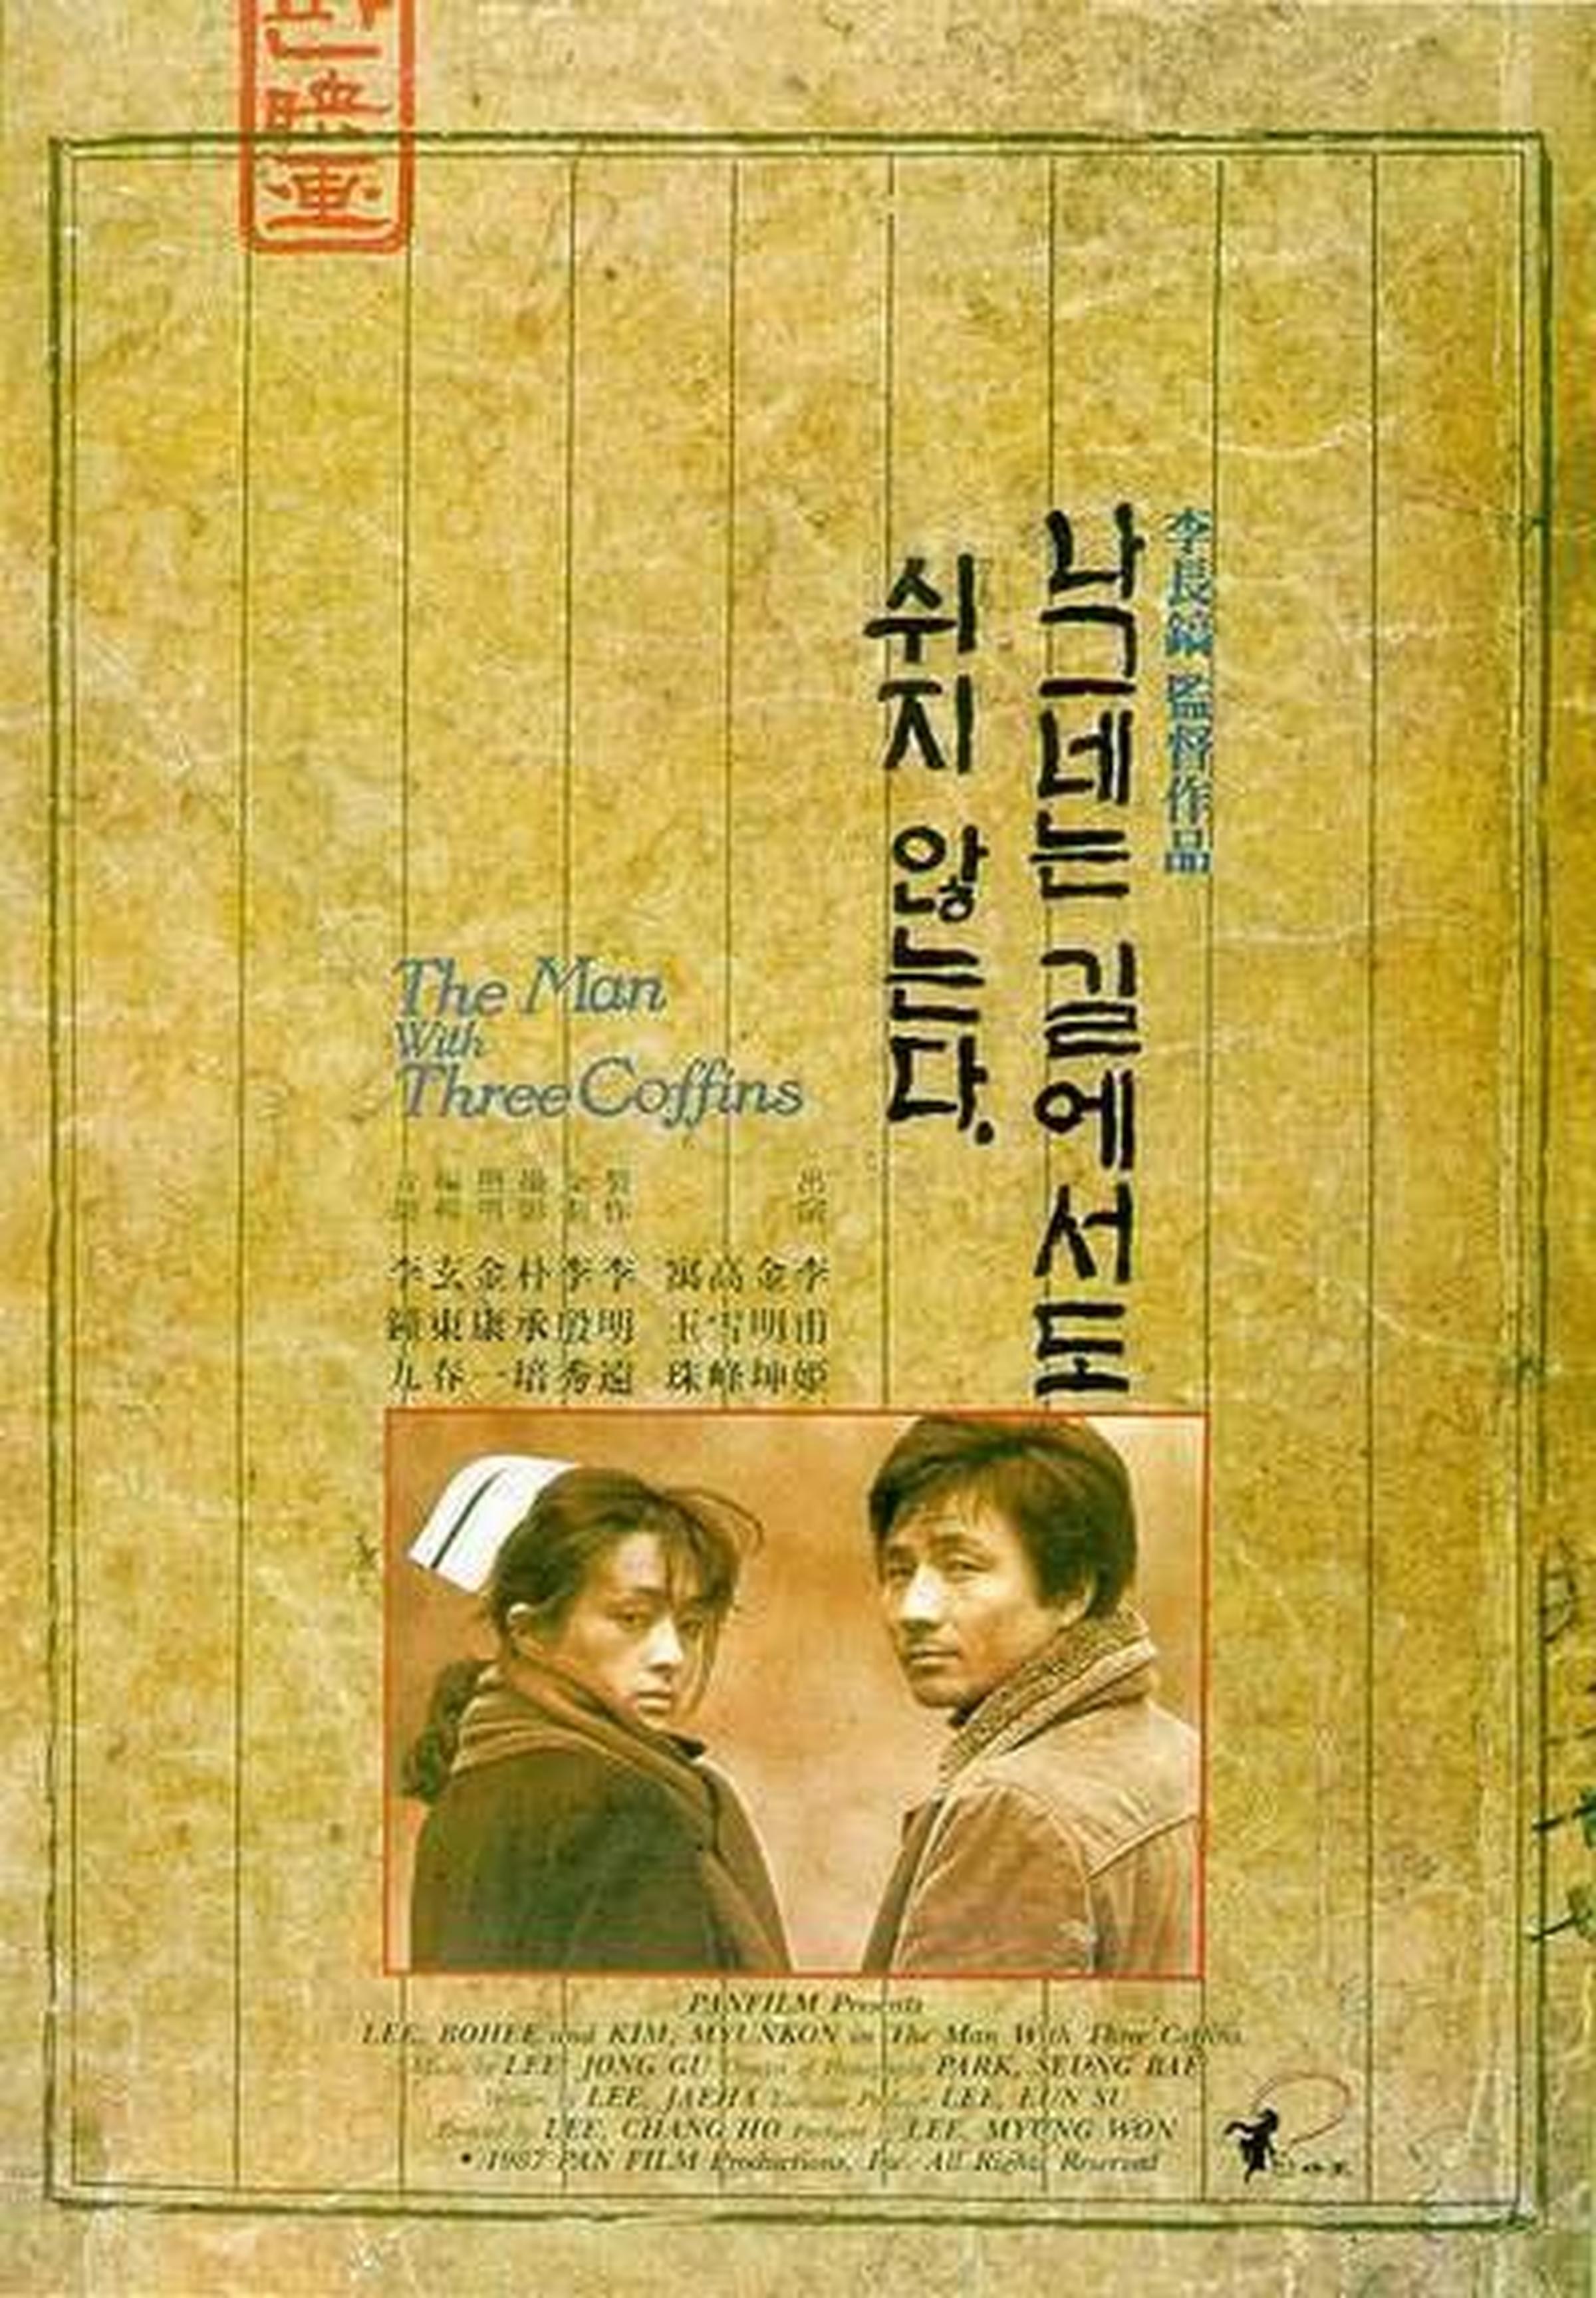 【1980-1990】《旅者不息》 (1987)导演李长镐。影片入围第2届东京国际电影节主竞赛单元，获得费比西奖。